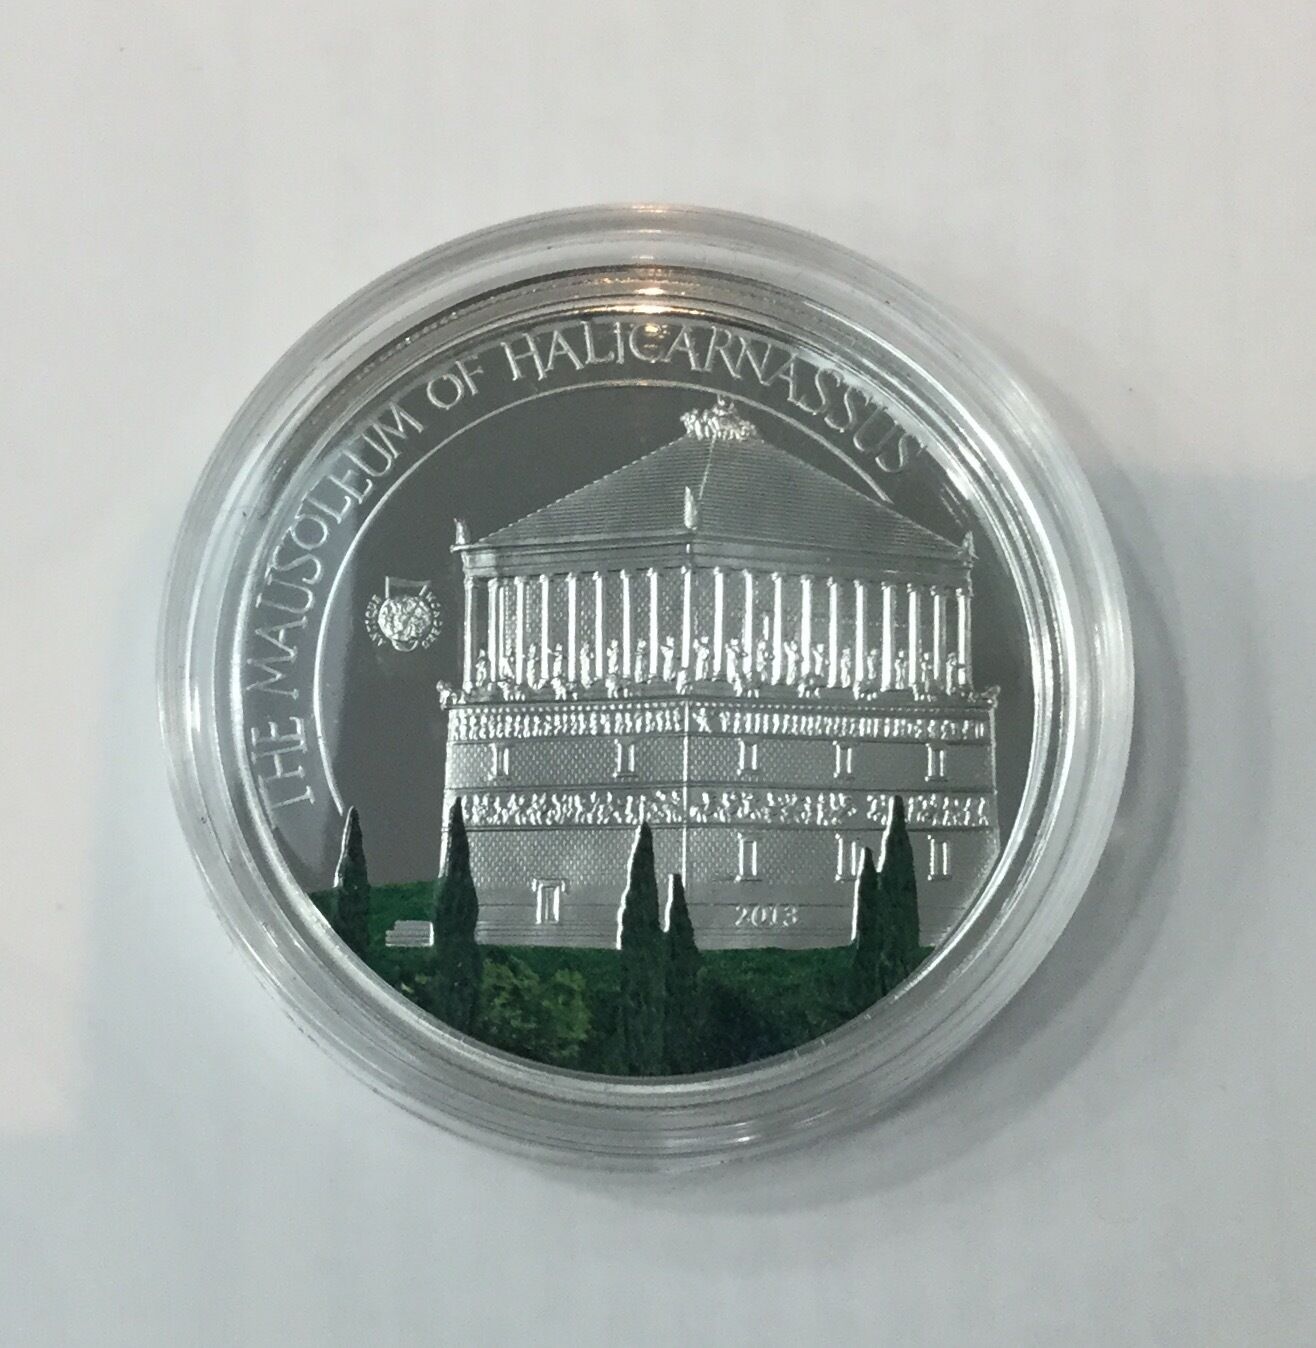 13RÉPUBLIQUE Of Palau Mausoleum of Halicarnassus $5 Proof Silver 2013